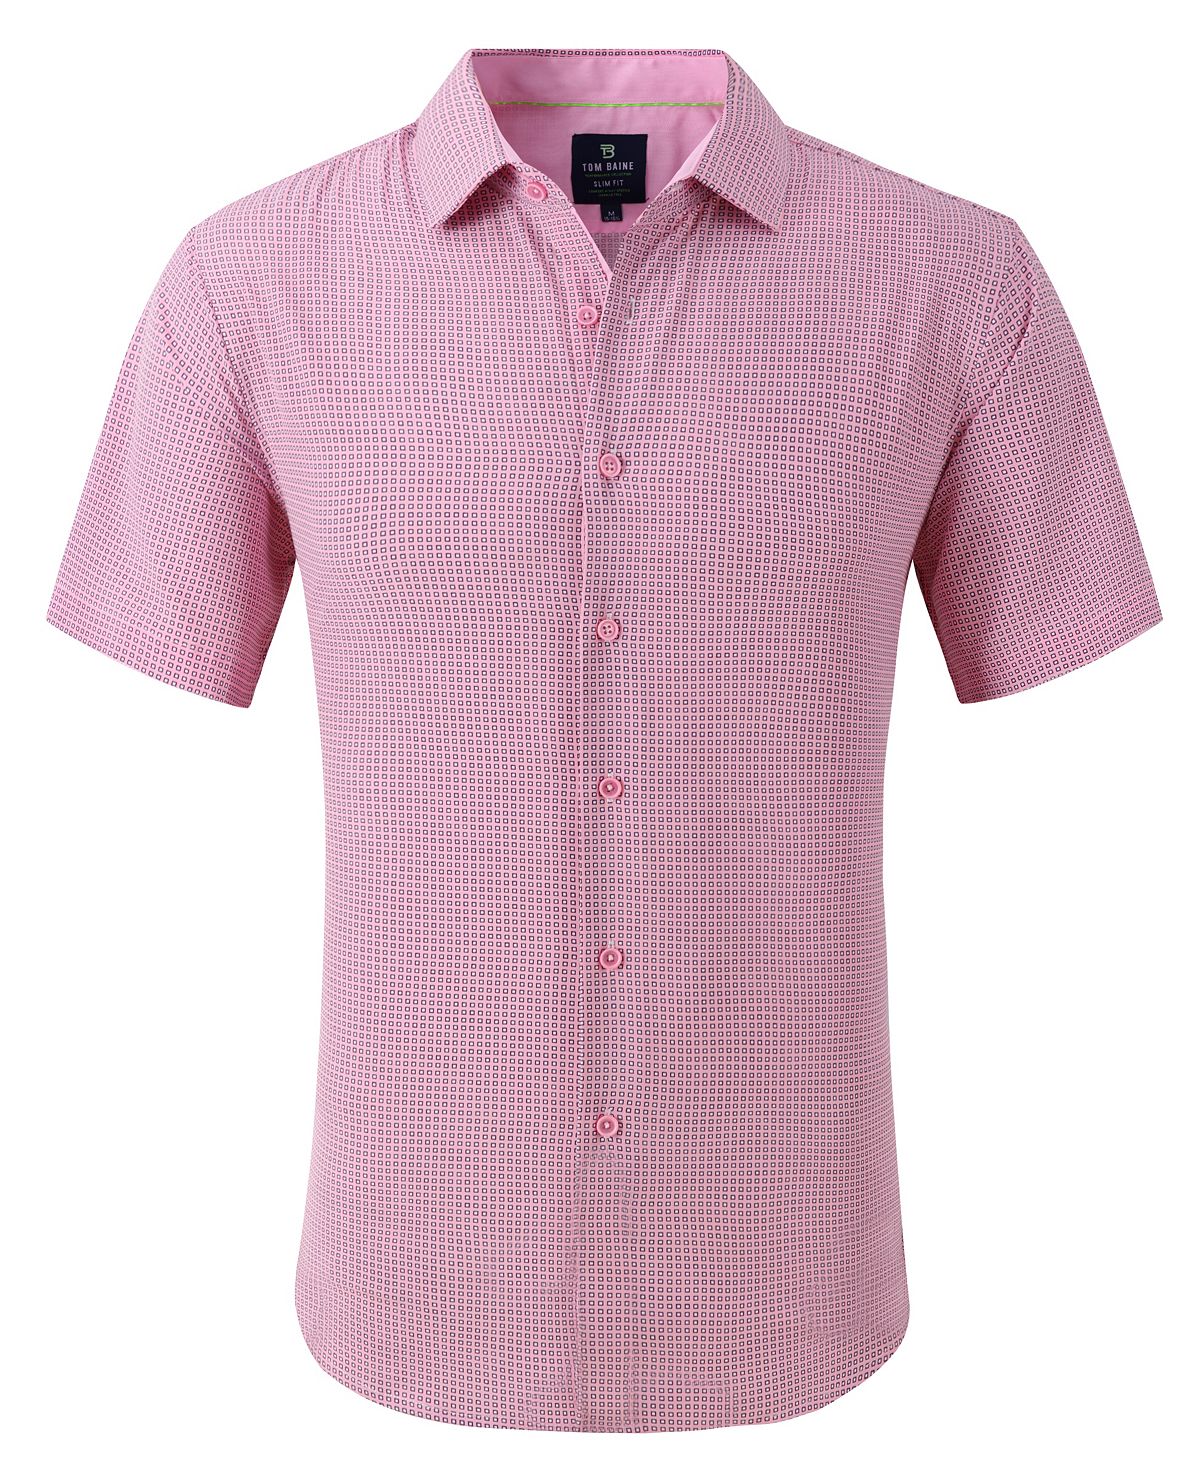 цена Мужская классическая рубашка slim fit с коротким рукавом на пуговицах Tom Baine, розовый